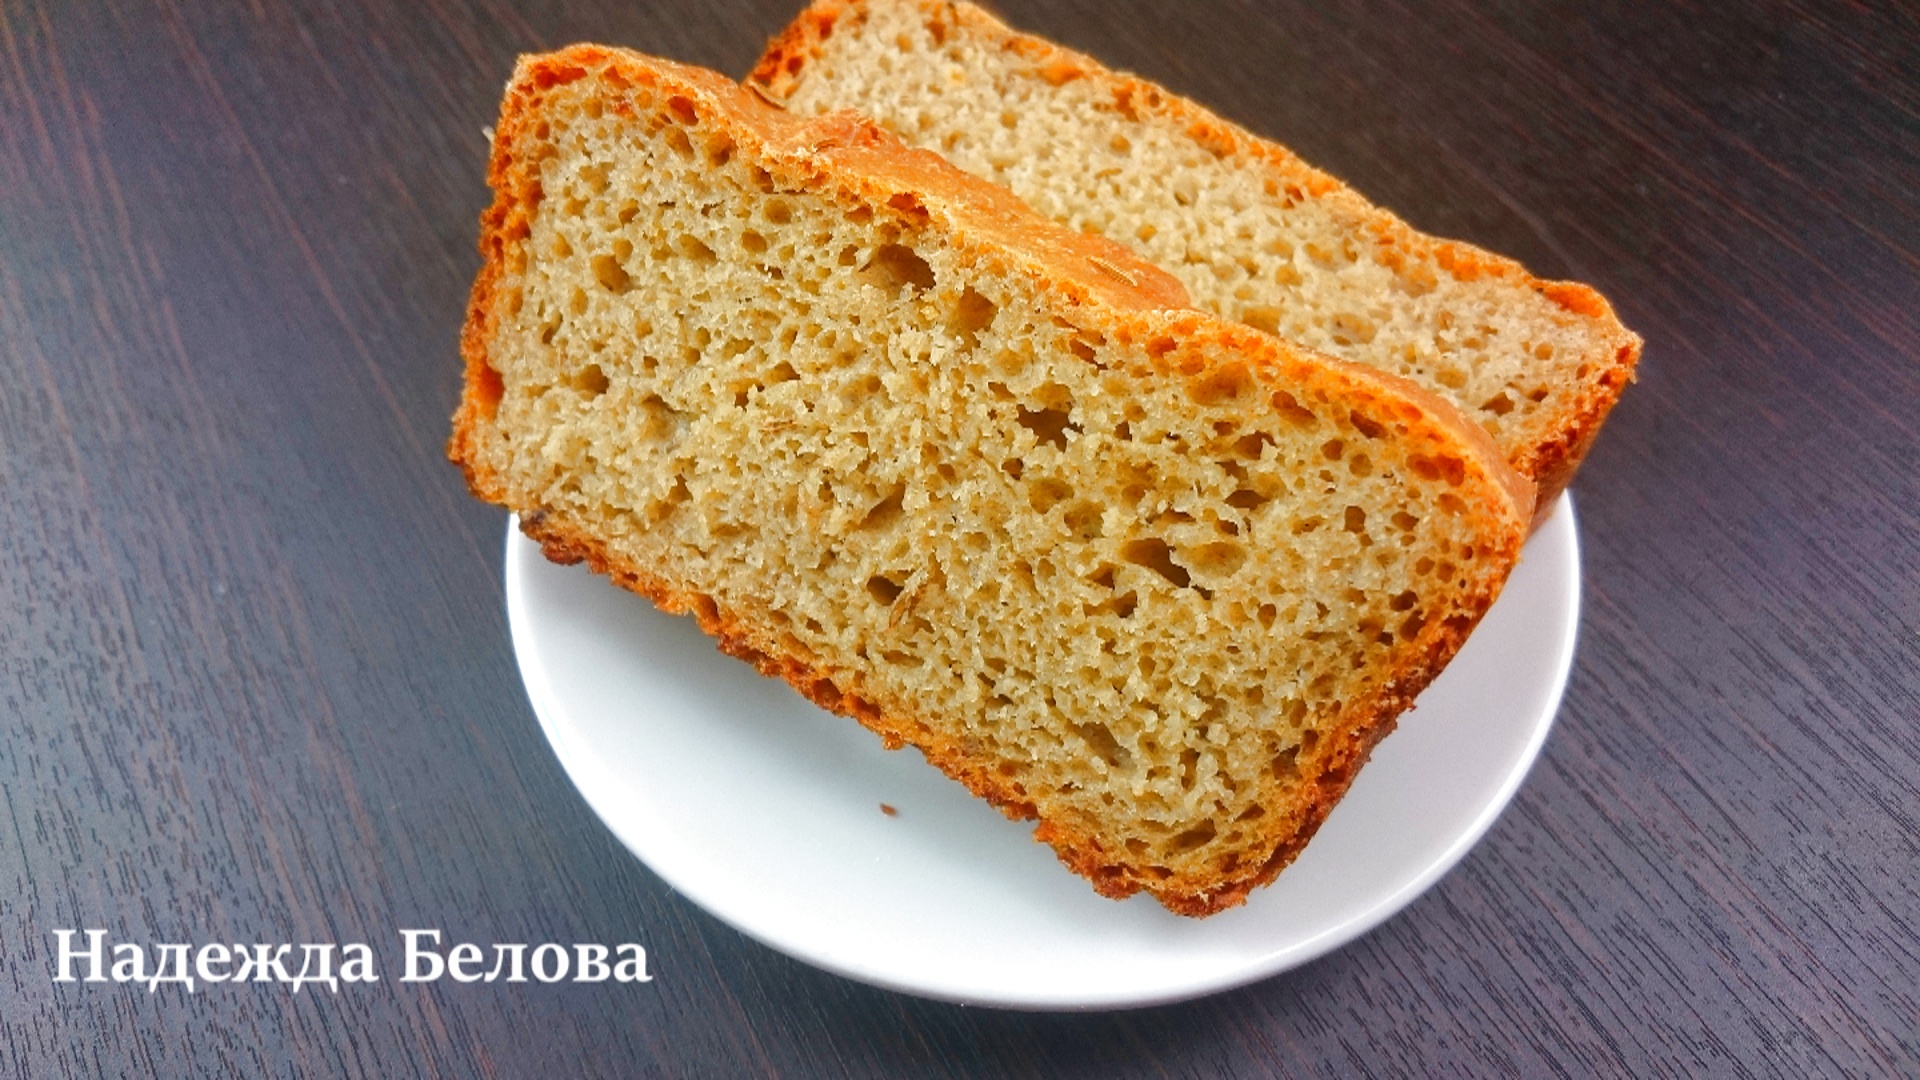 Хлеб ржано-пшеничный с тмином